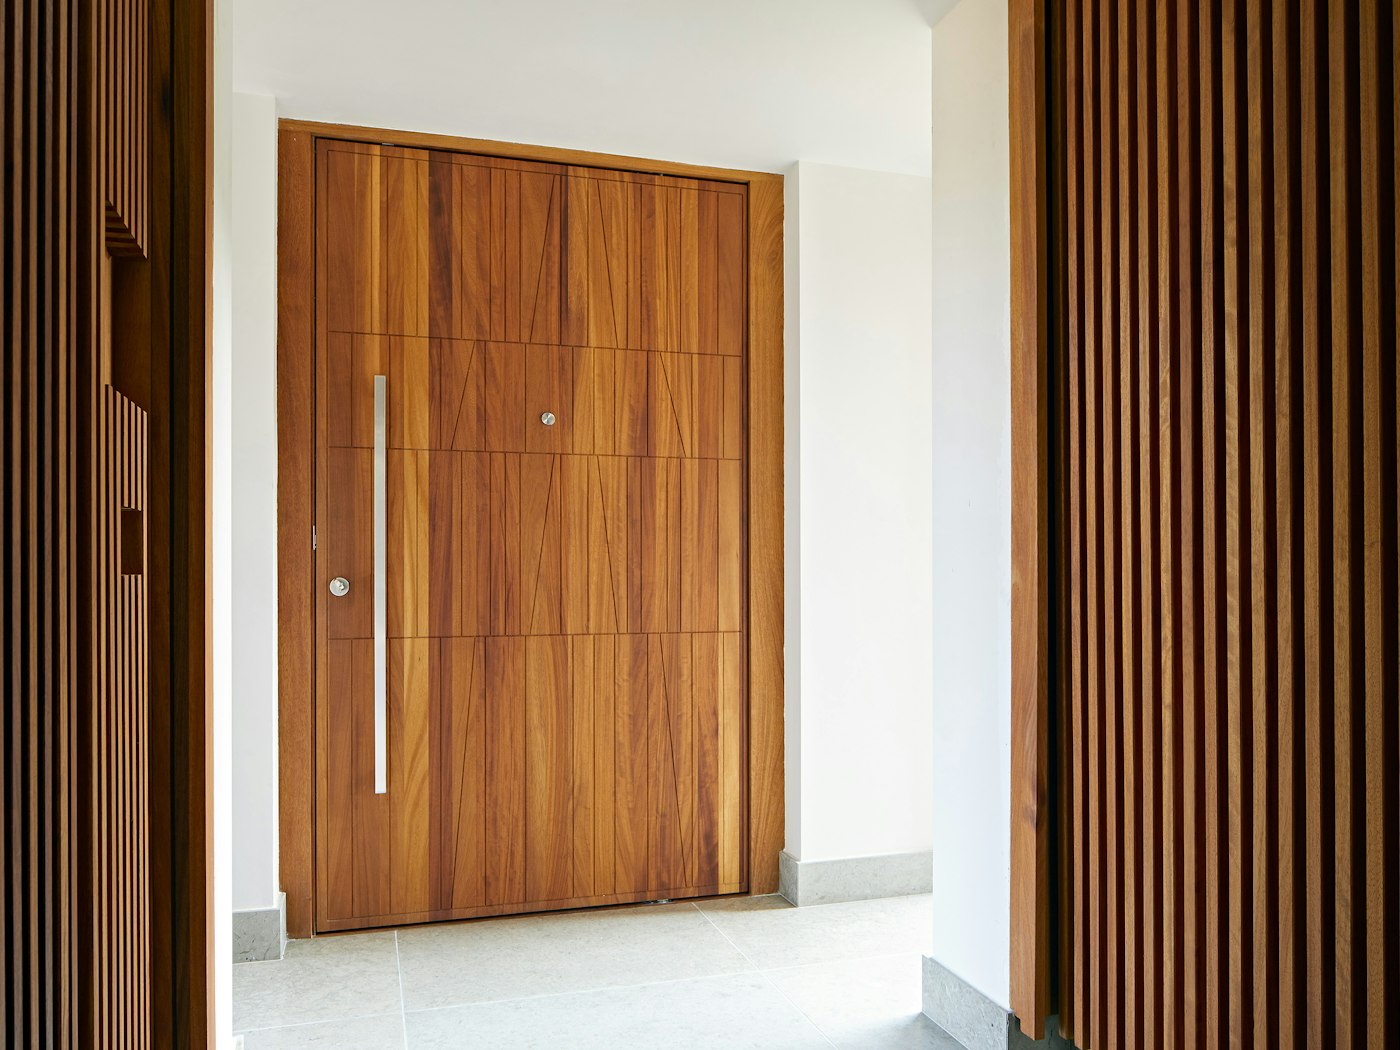 A designer's dream - creative wooden front door design